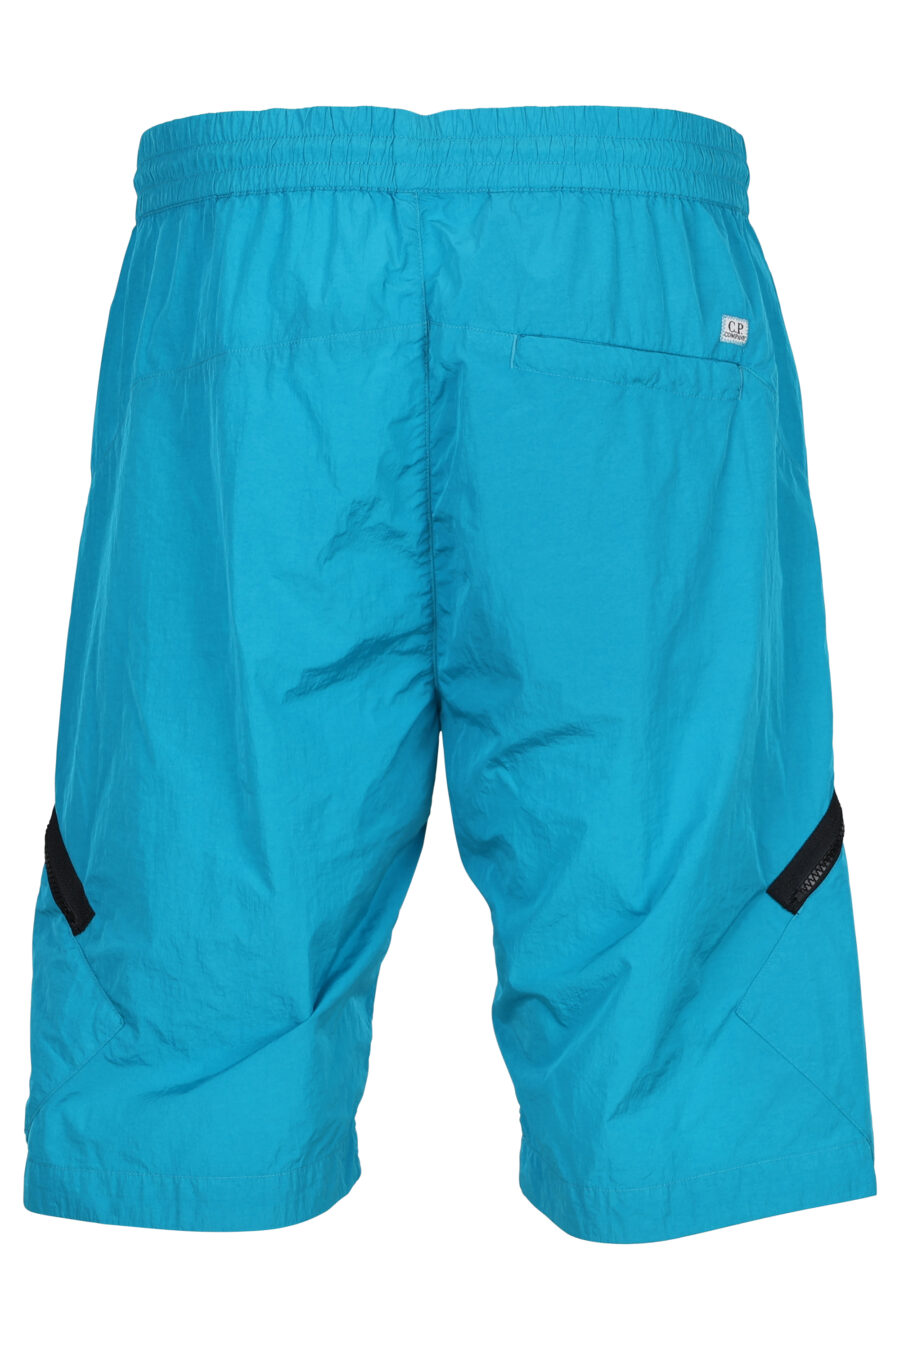 Türkisblaue Shorts mit diagonalem Reißverschluss und Linsenlogo - 7620943384529 2